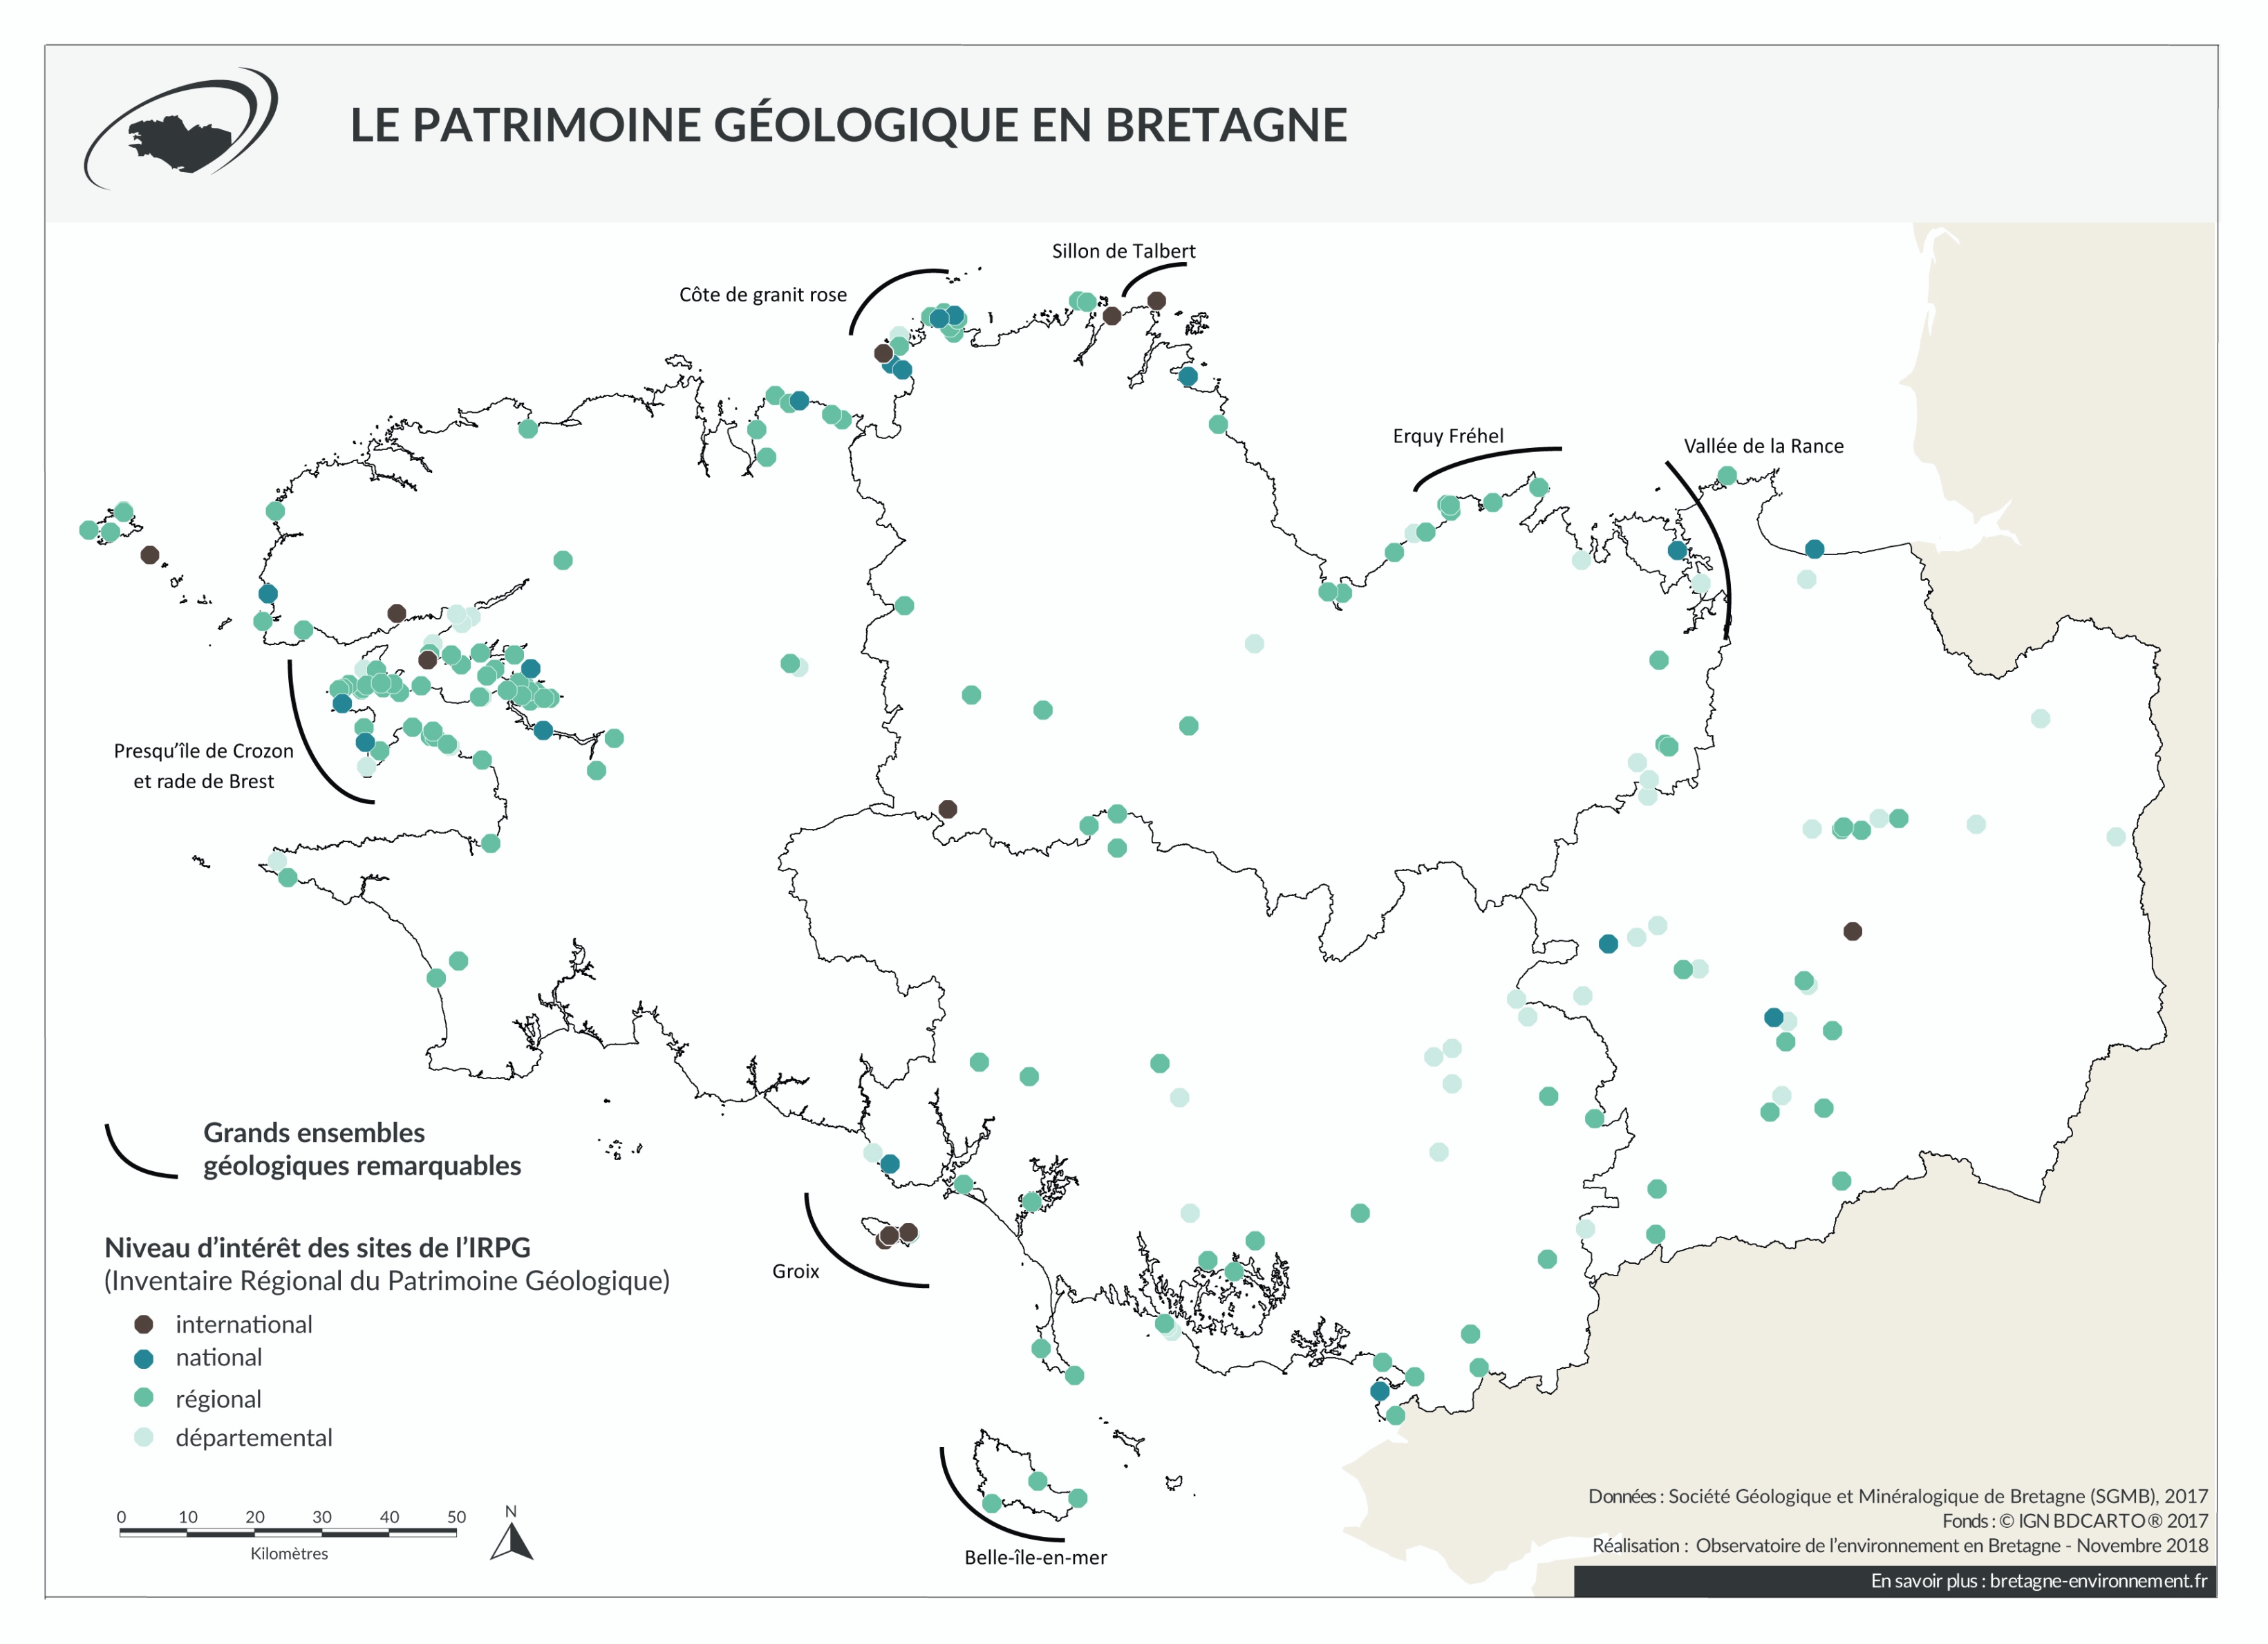 Les grands ensembles géologiques remarquables et les sites de l'IRPG bretons